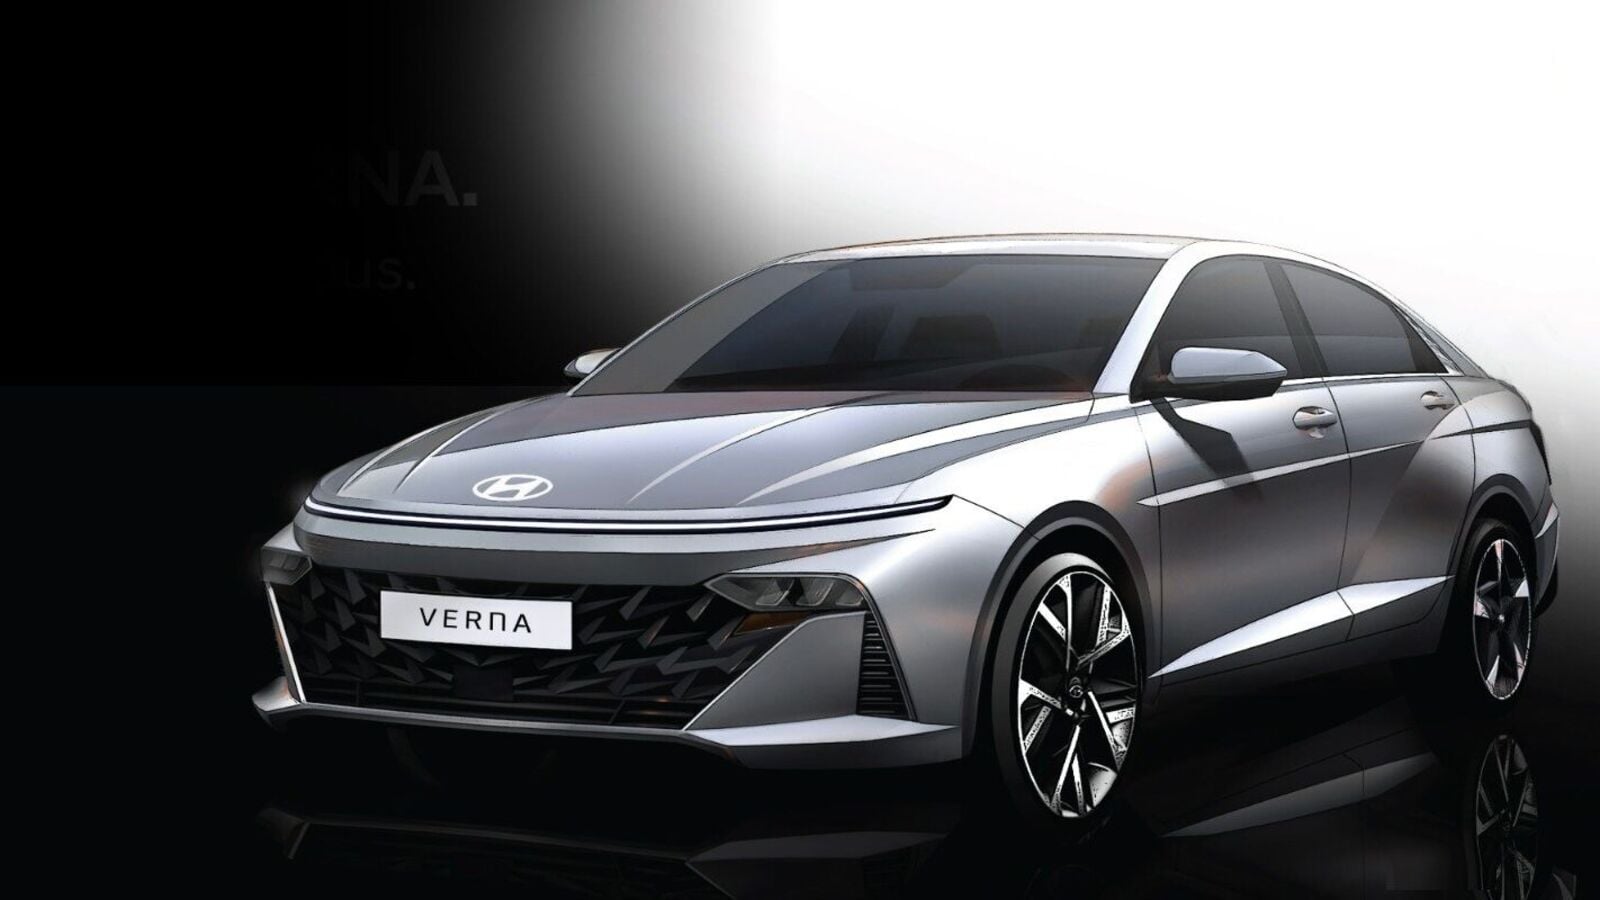 2023 Hyundai Verna design sketches reveal aggressive exterior highlights |  Car News